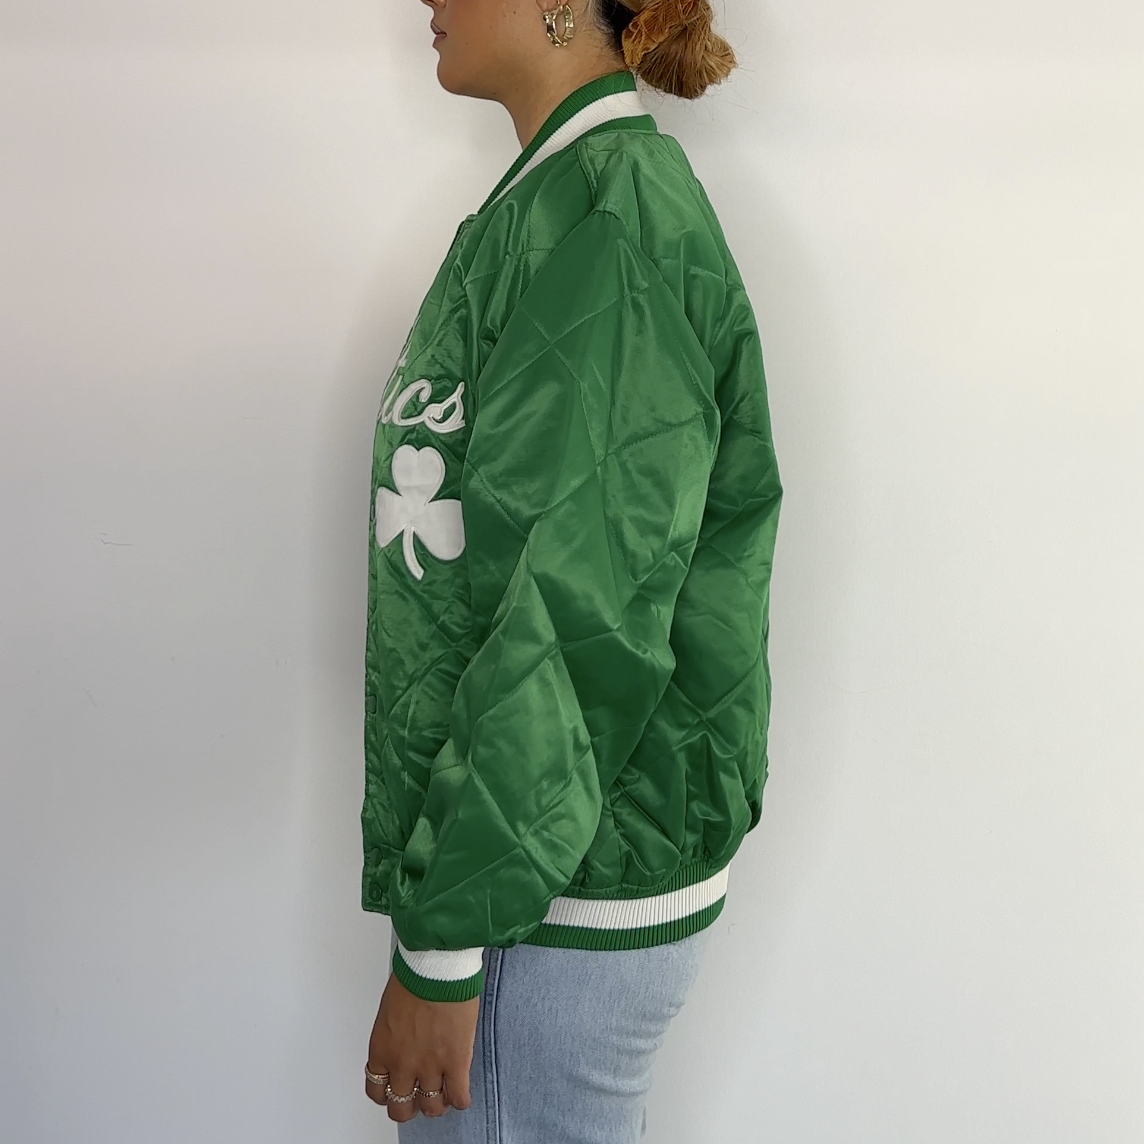 Boston Celtics Majestic Jacket